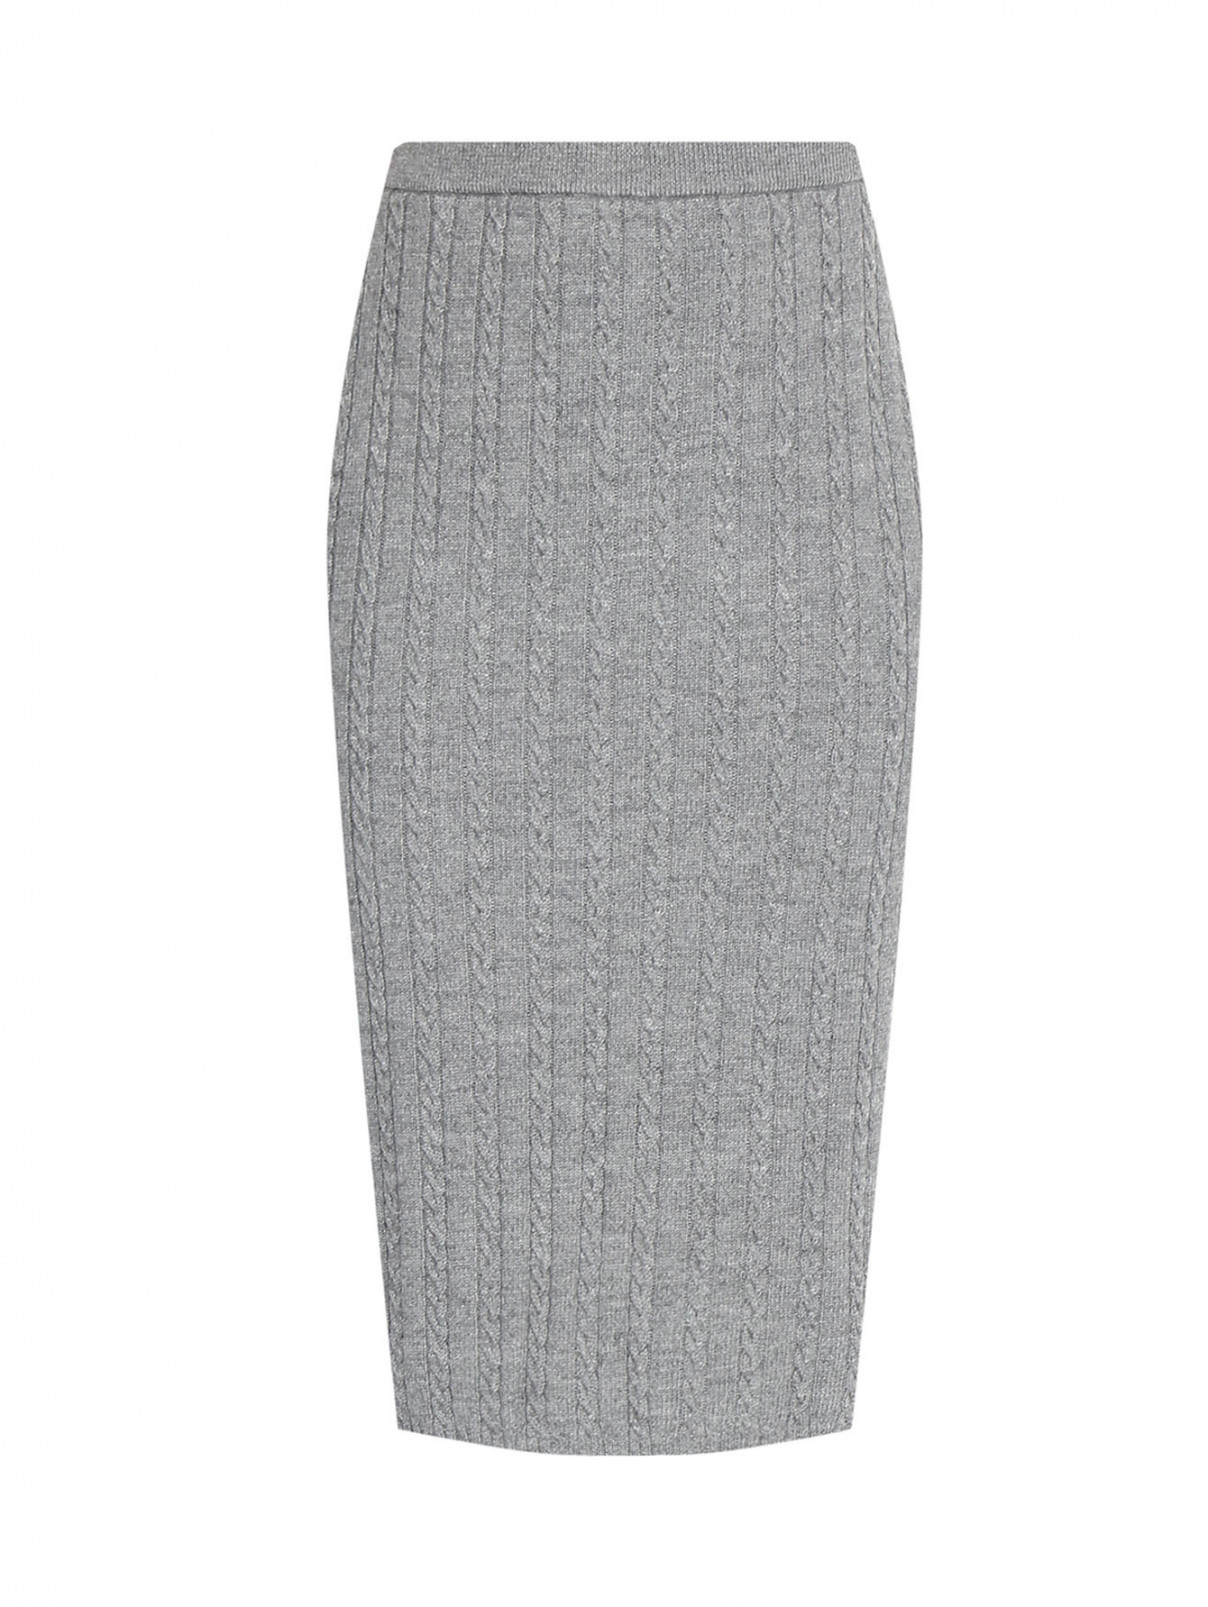 Трикотажная юбка из смешанной шерсти на резинке Marina Rinaldi  –  Общий вид  – Цвет:  Серый